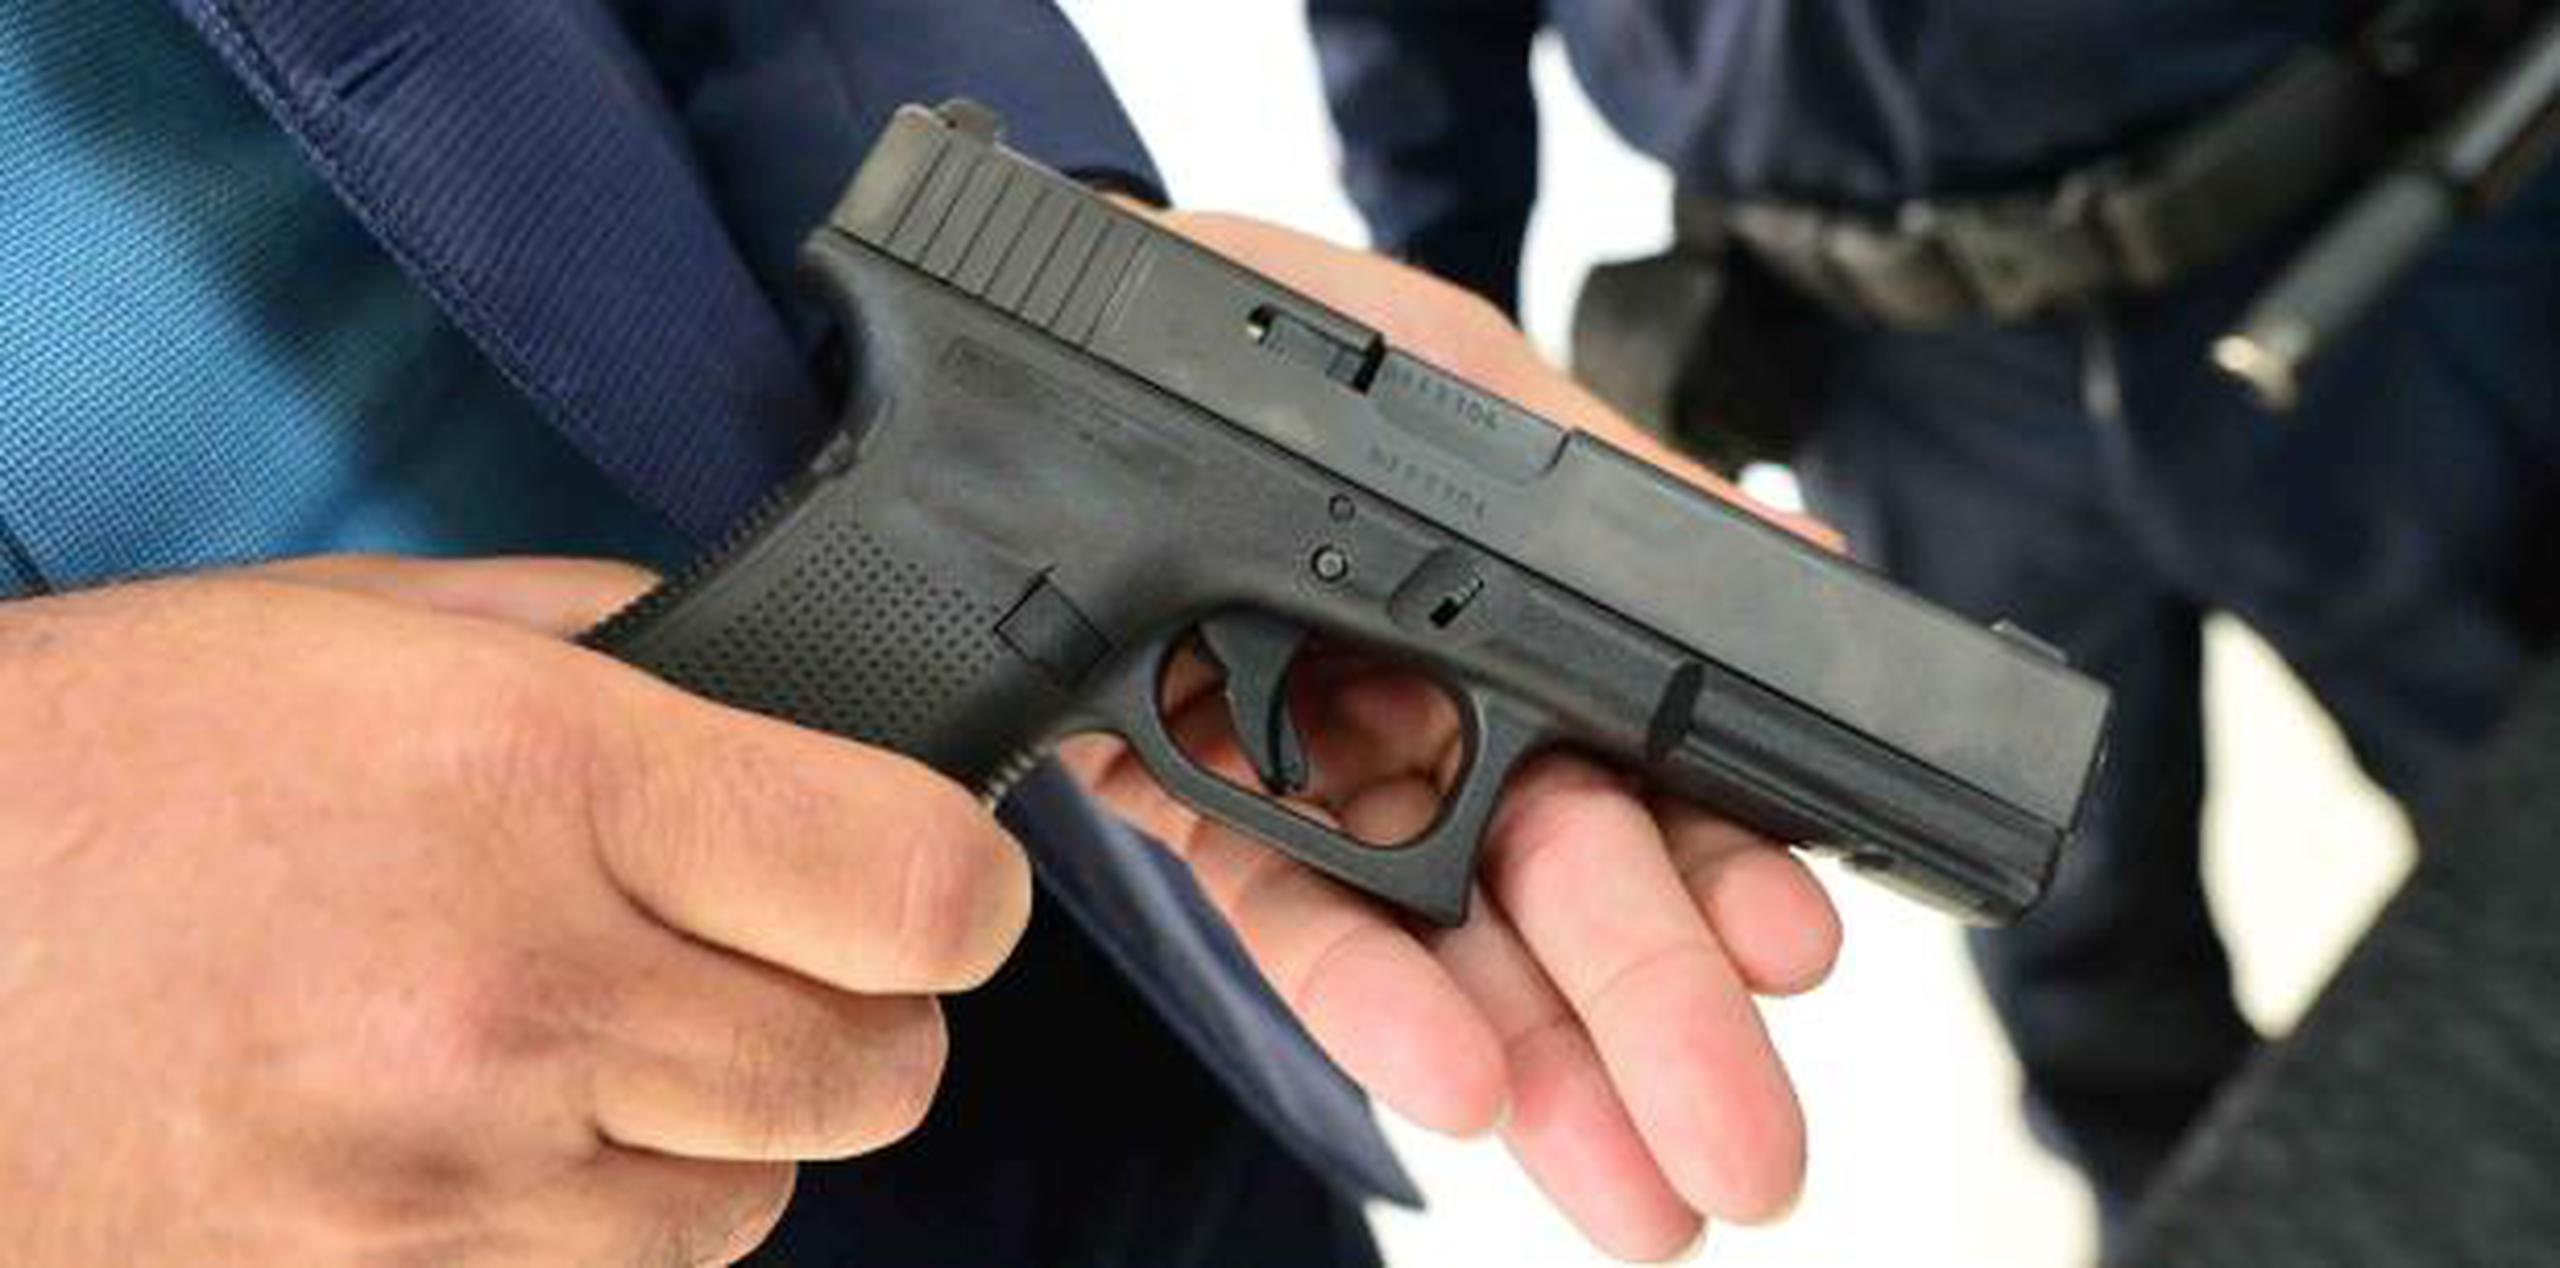 Los oficiales son adiestrados para manejar la pistola Glock, 40 milímetros, de cuarta generación. (luis.alcaladelolmo@gfrmedia.com)